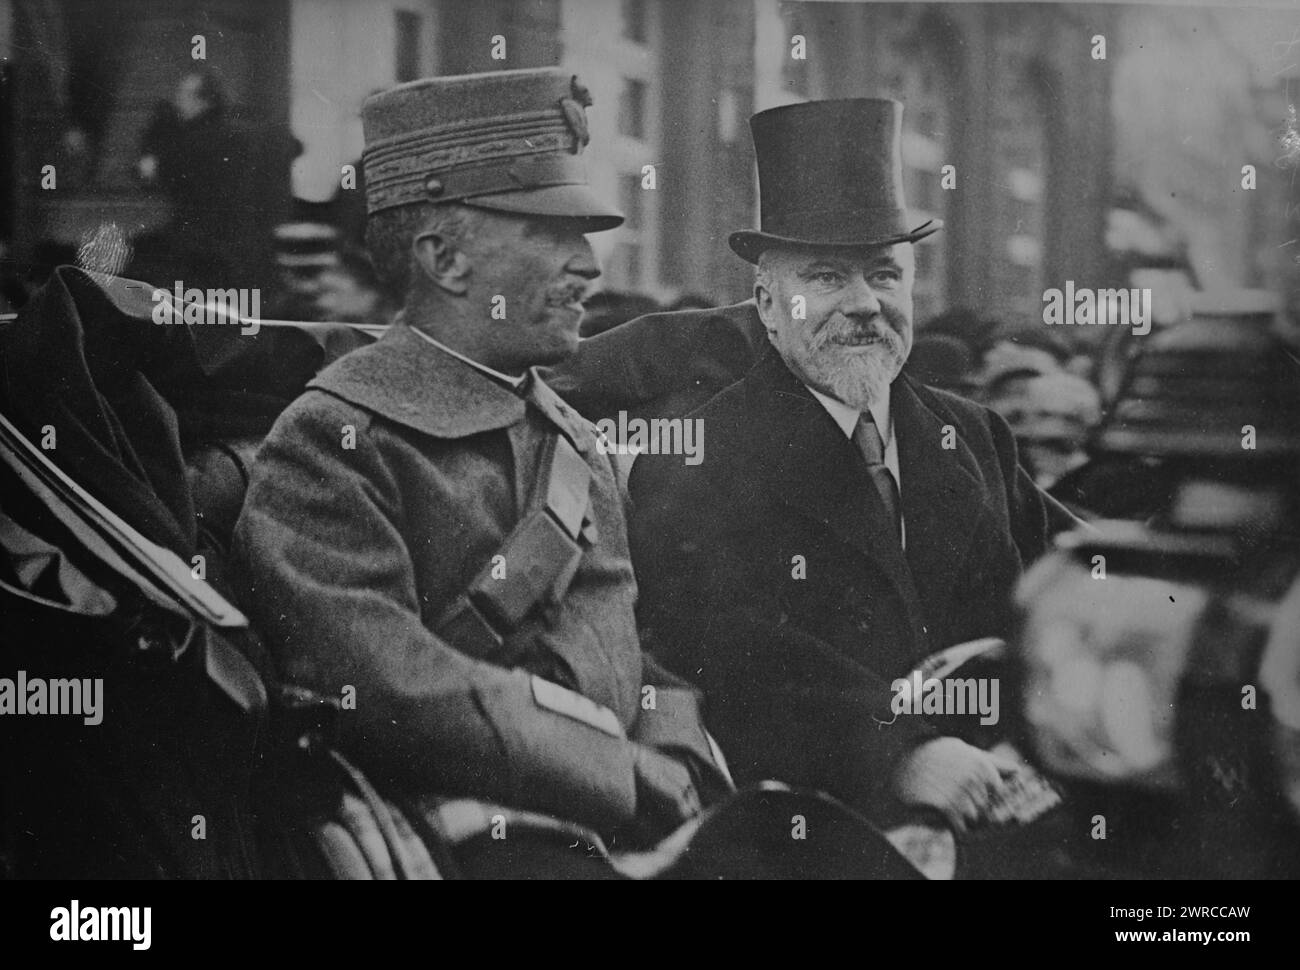 König von Italien & Poincare, Foto zeigt König Victor Emmanuel III. (1869-1947) von Italien mit Raymond Poincaré (1860-1934), Präsident von Frankreich., 1918, Glasnegative, 1 negativ: Glas Stockfoto